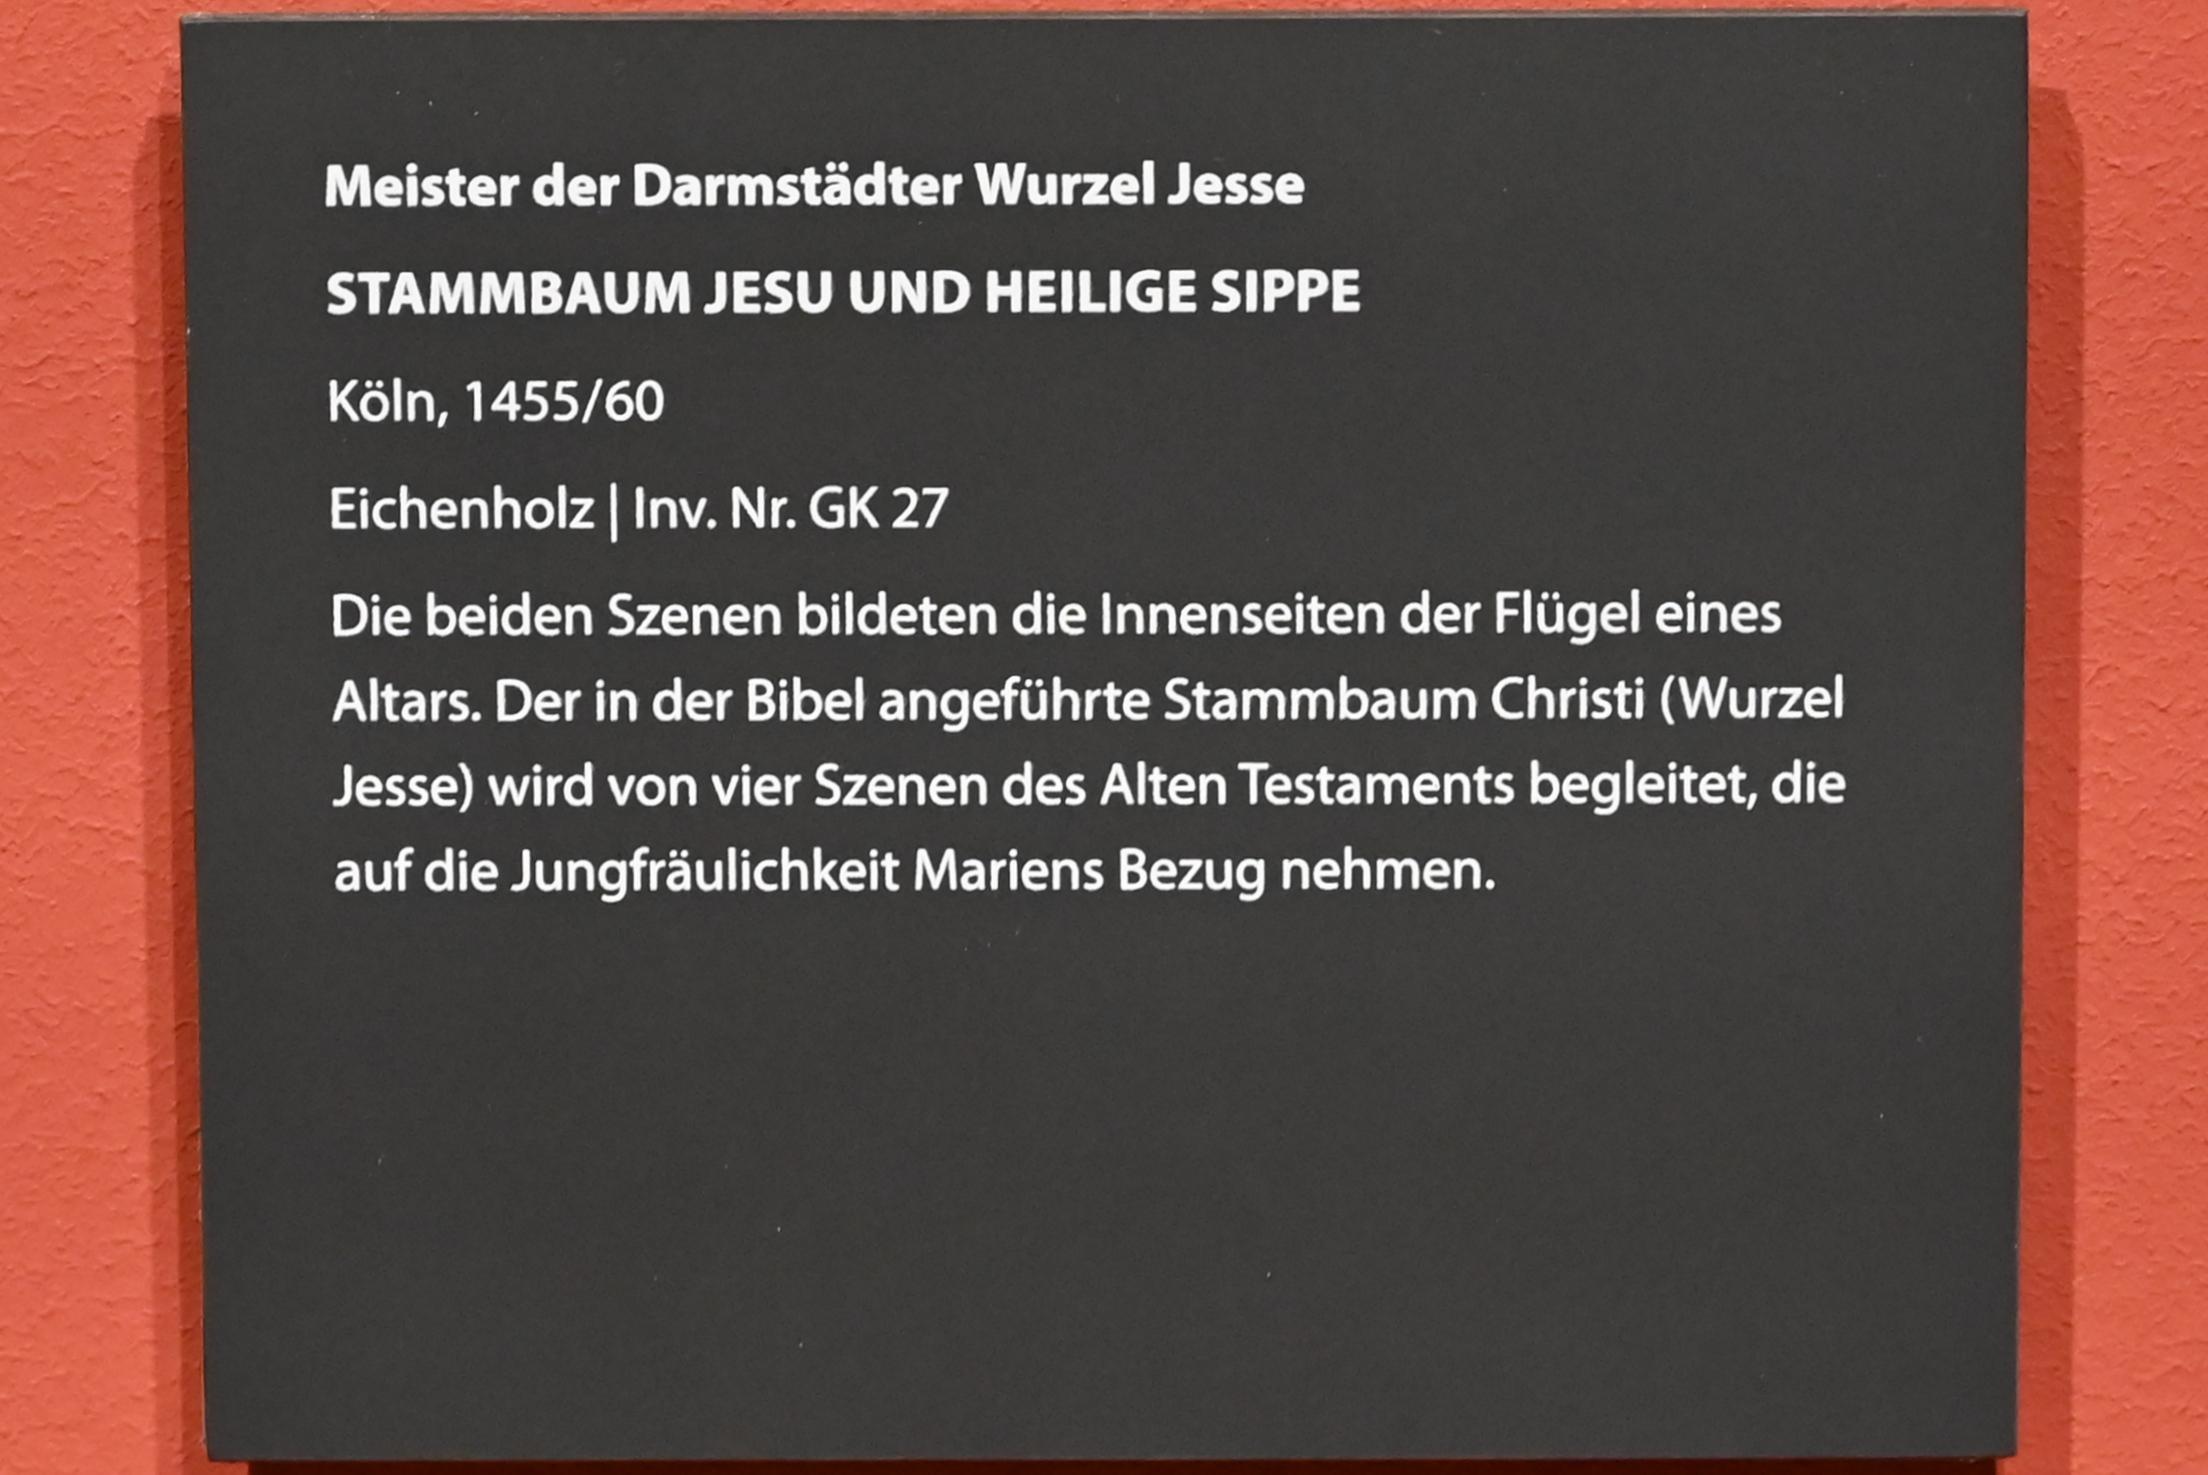 Meister der Darmstädter Wurzel Jesse (1457), Stammbaum Jesu und Heilige Sippe, Darmstadt, Hessisches Landesmuseum, Saal 14, 1455–1460, Bild 3/4